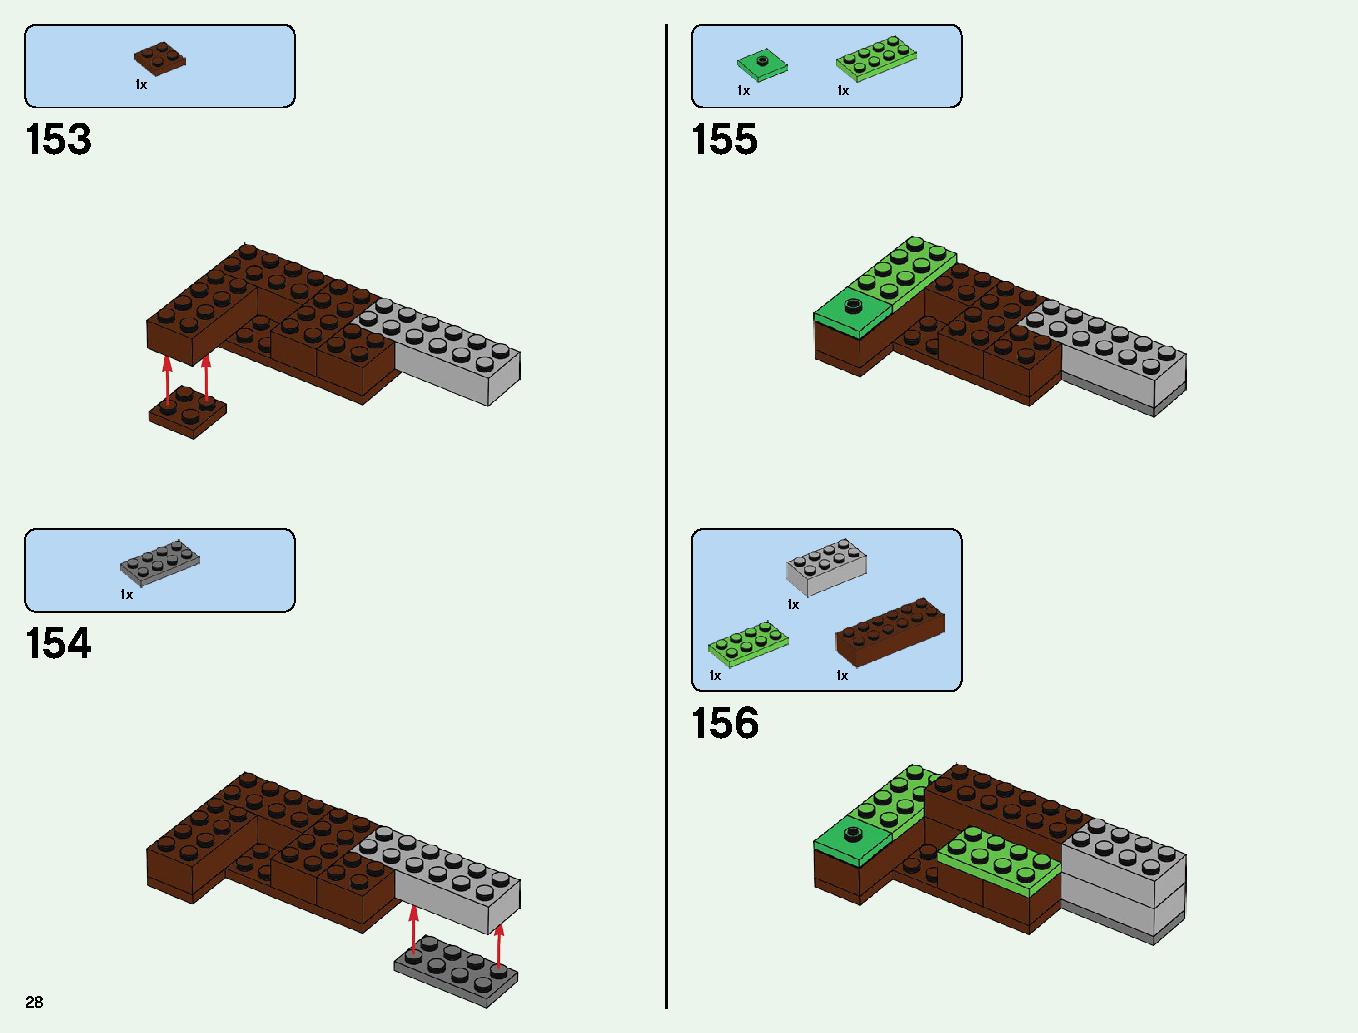 ベッドロックの冒険 21147 レゴの商品情報 レゴの説明書・組立方法 28 page